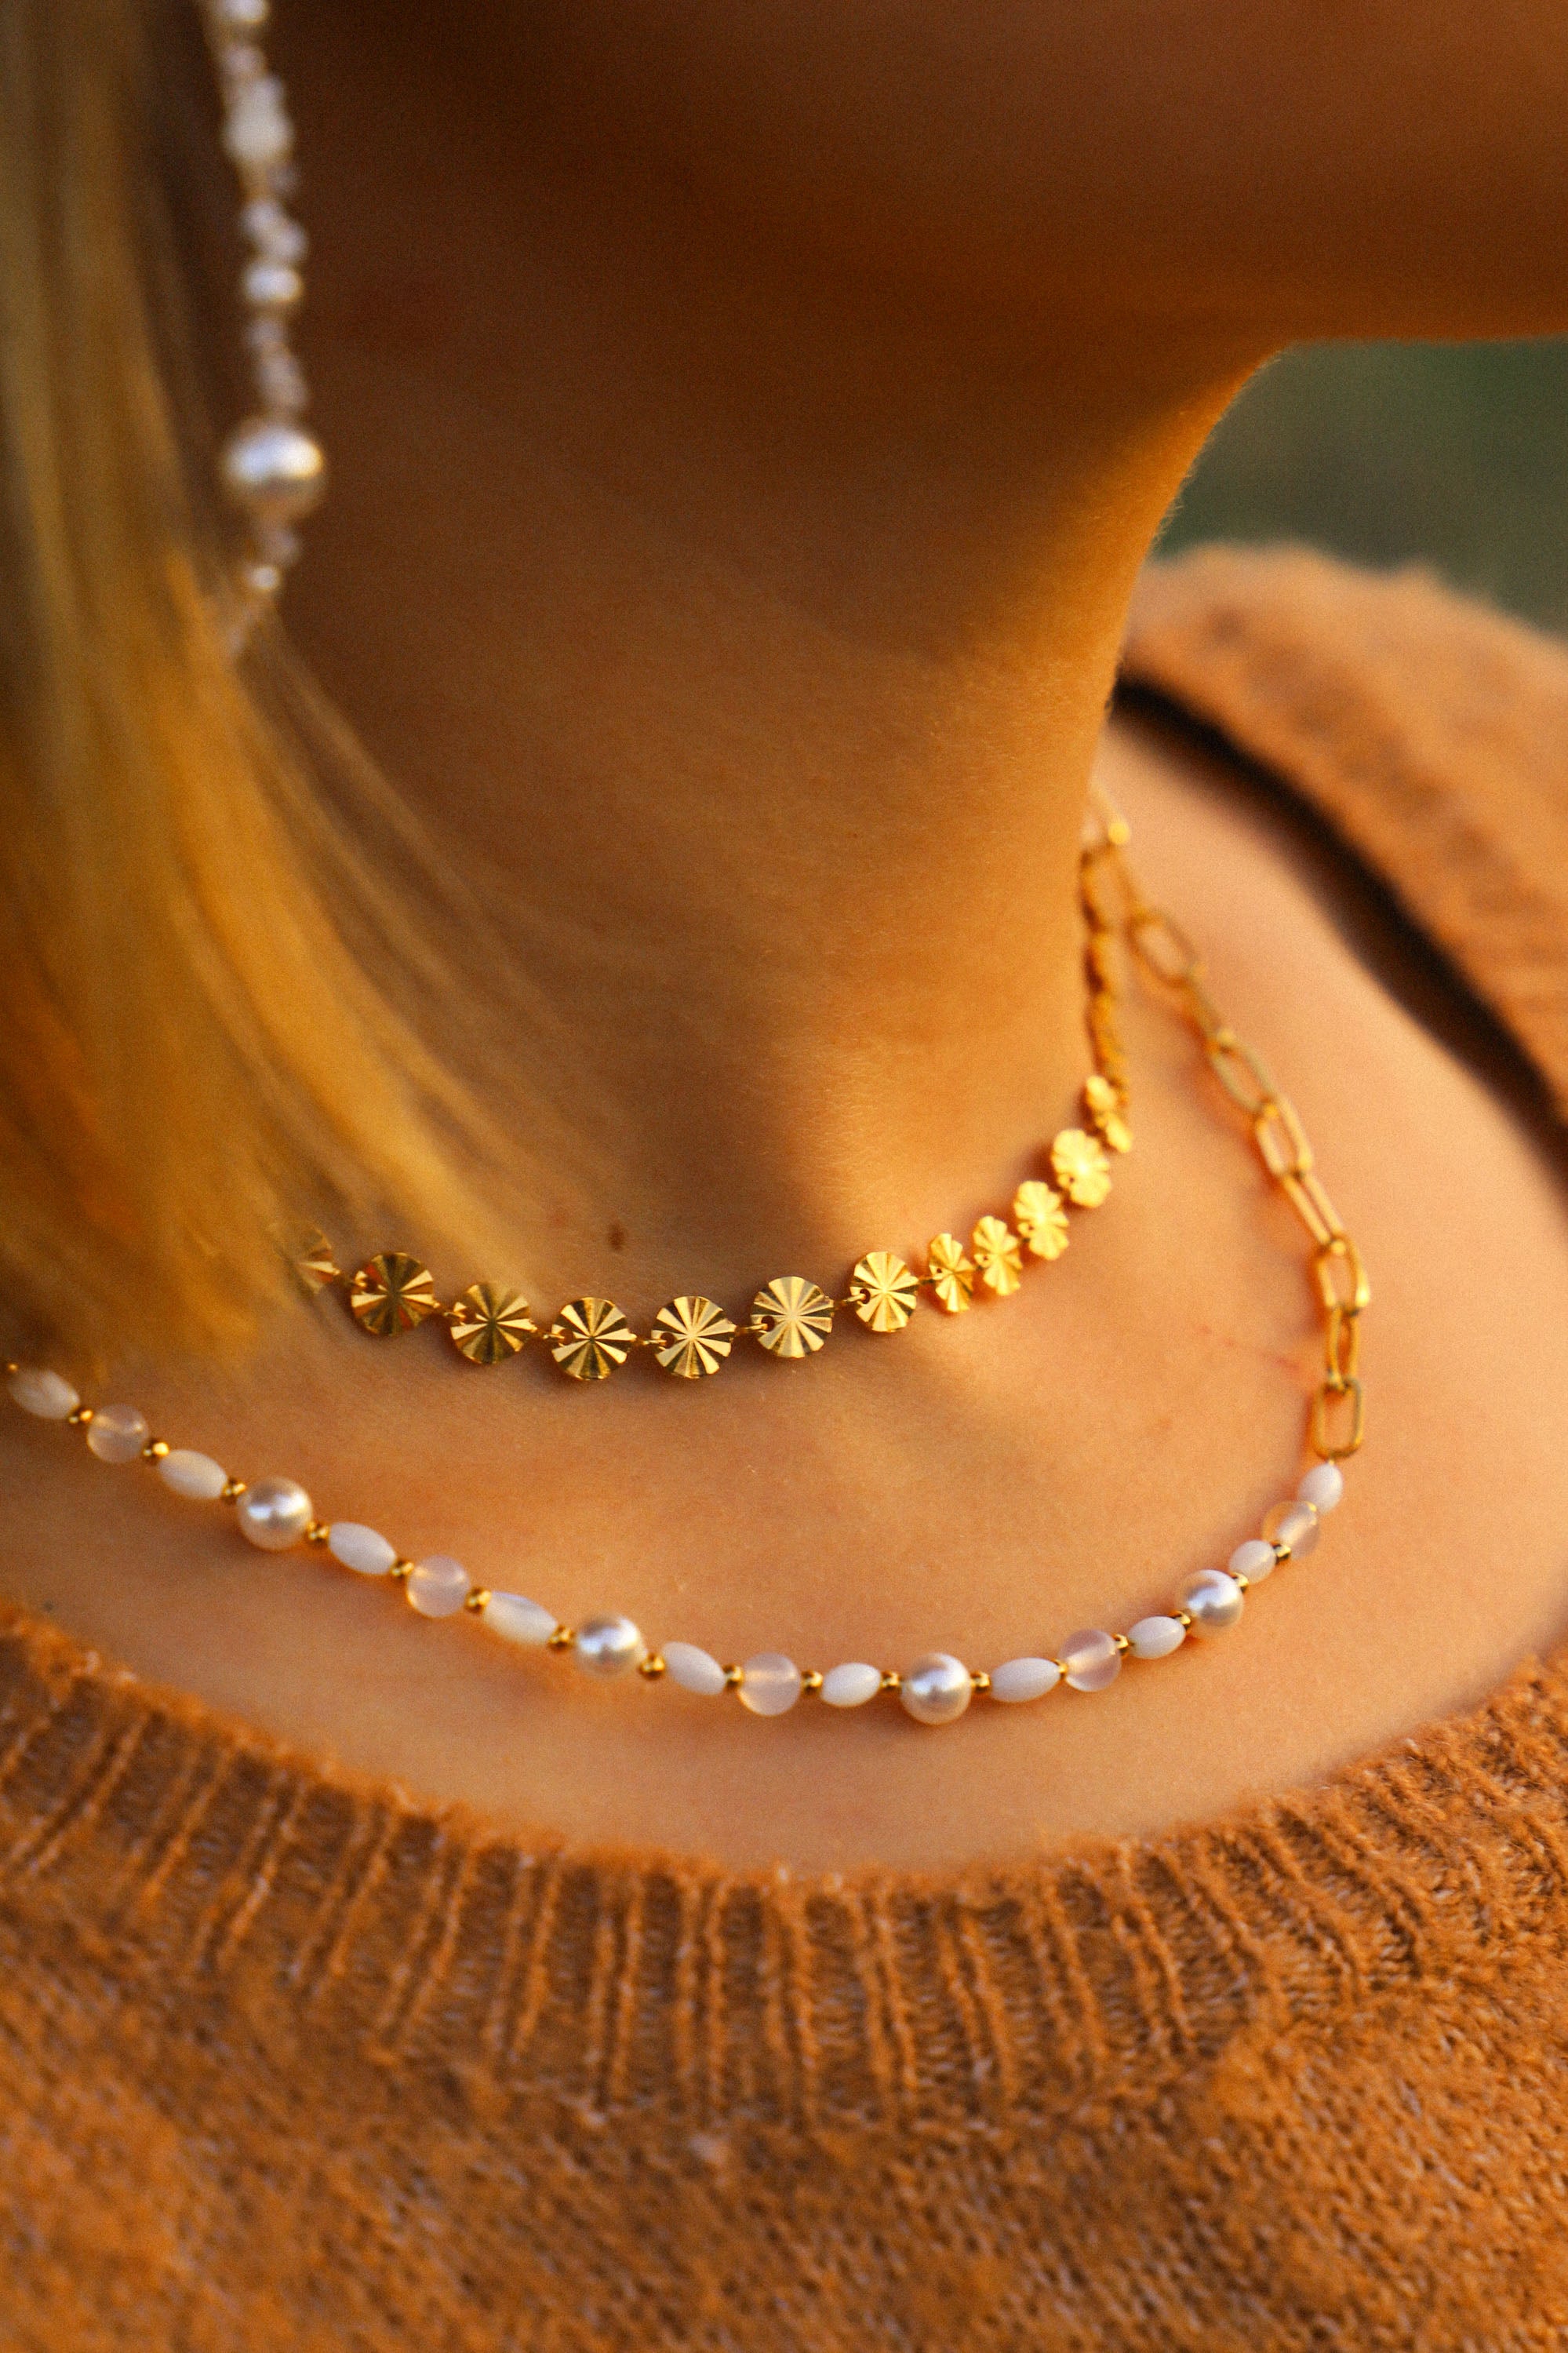 Collier Grace asymétrique, avec un côté perles et un côté chaîne. Les perles sont blanches et rythmées par de petites dorées.